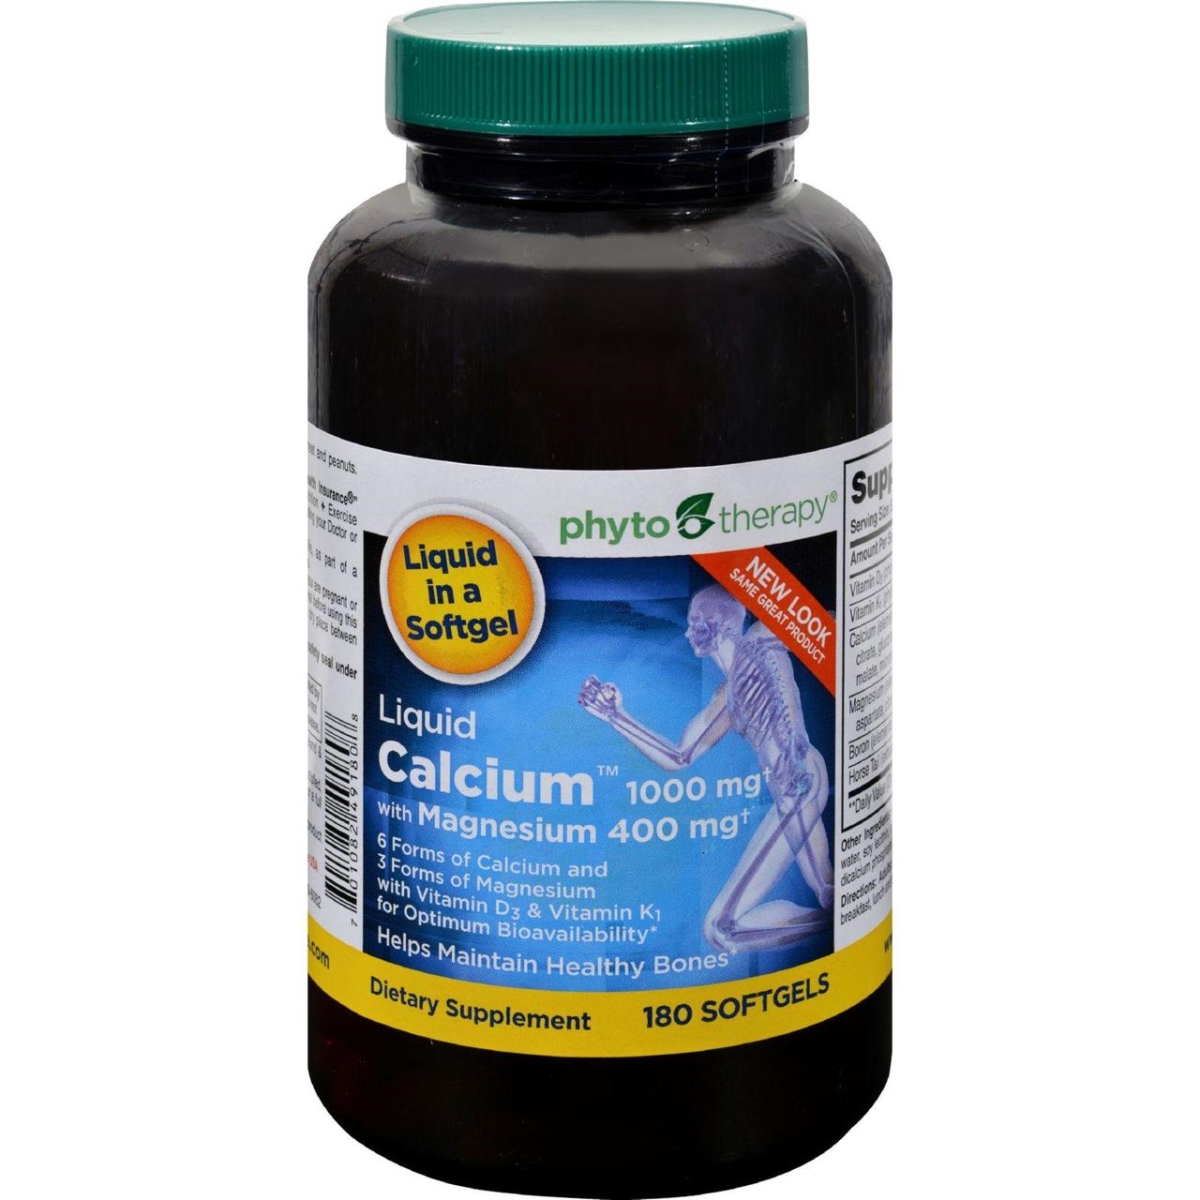 Hg0648469 1000 Mg Liquid Calcium With Magnesium - 180 Softgels